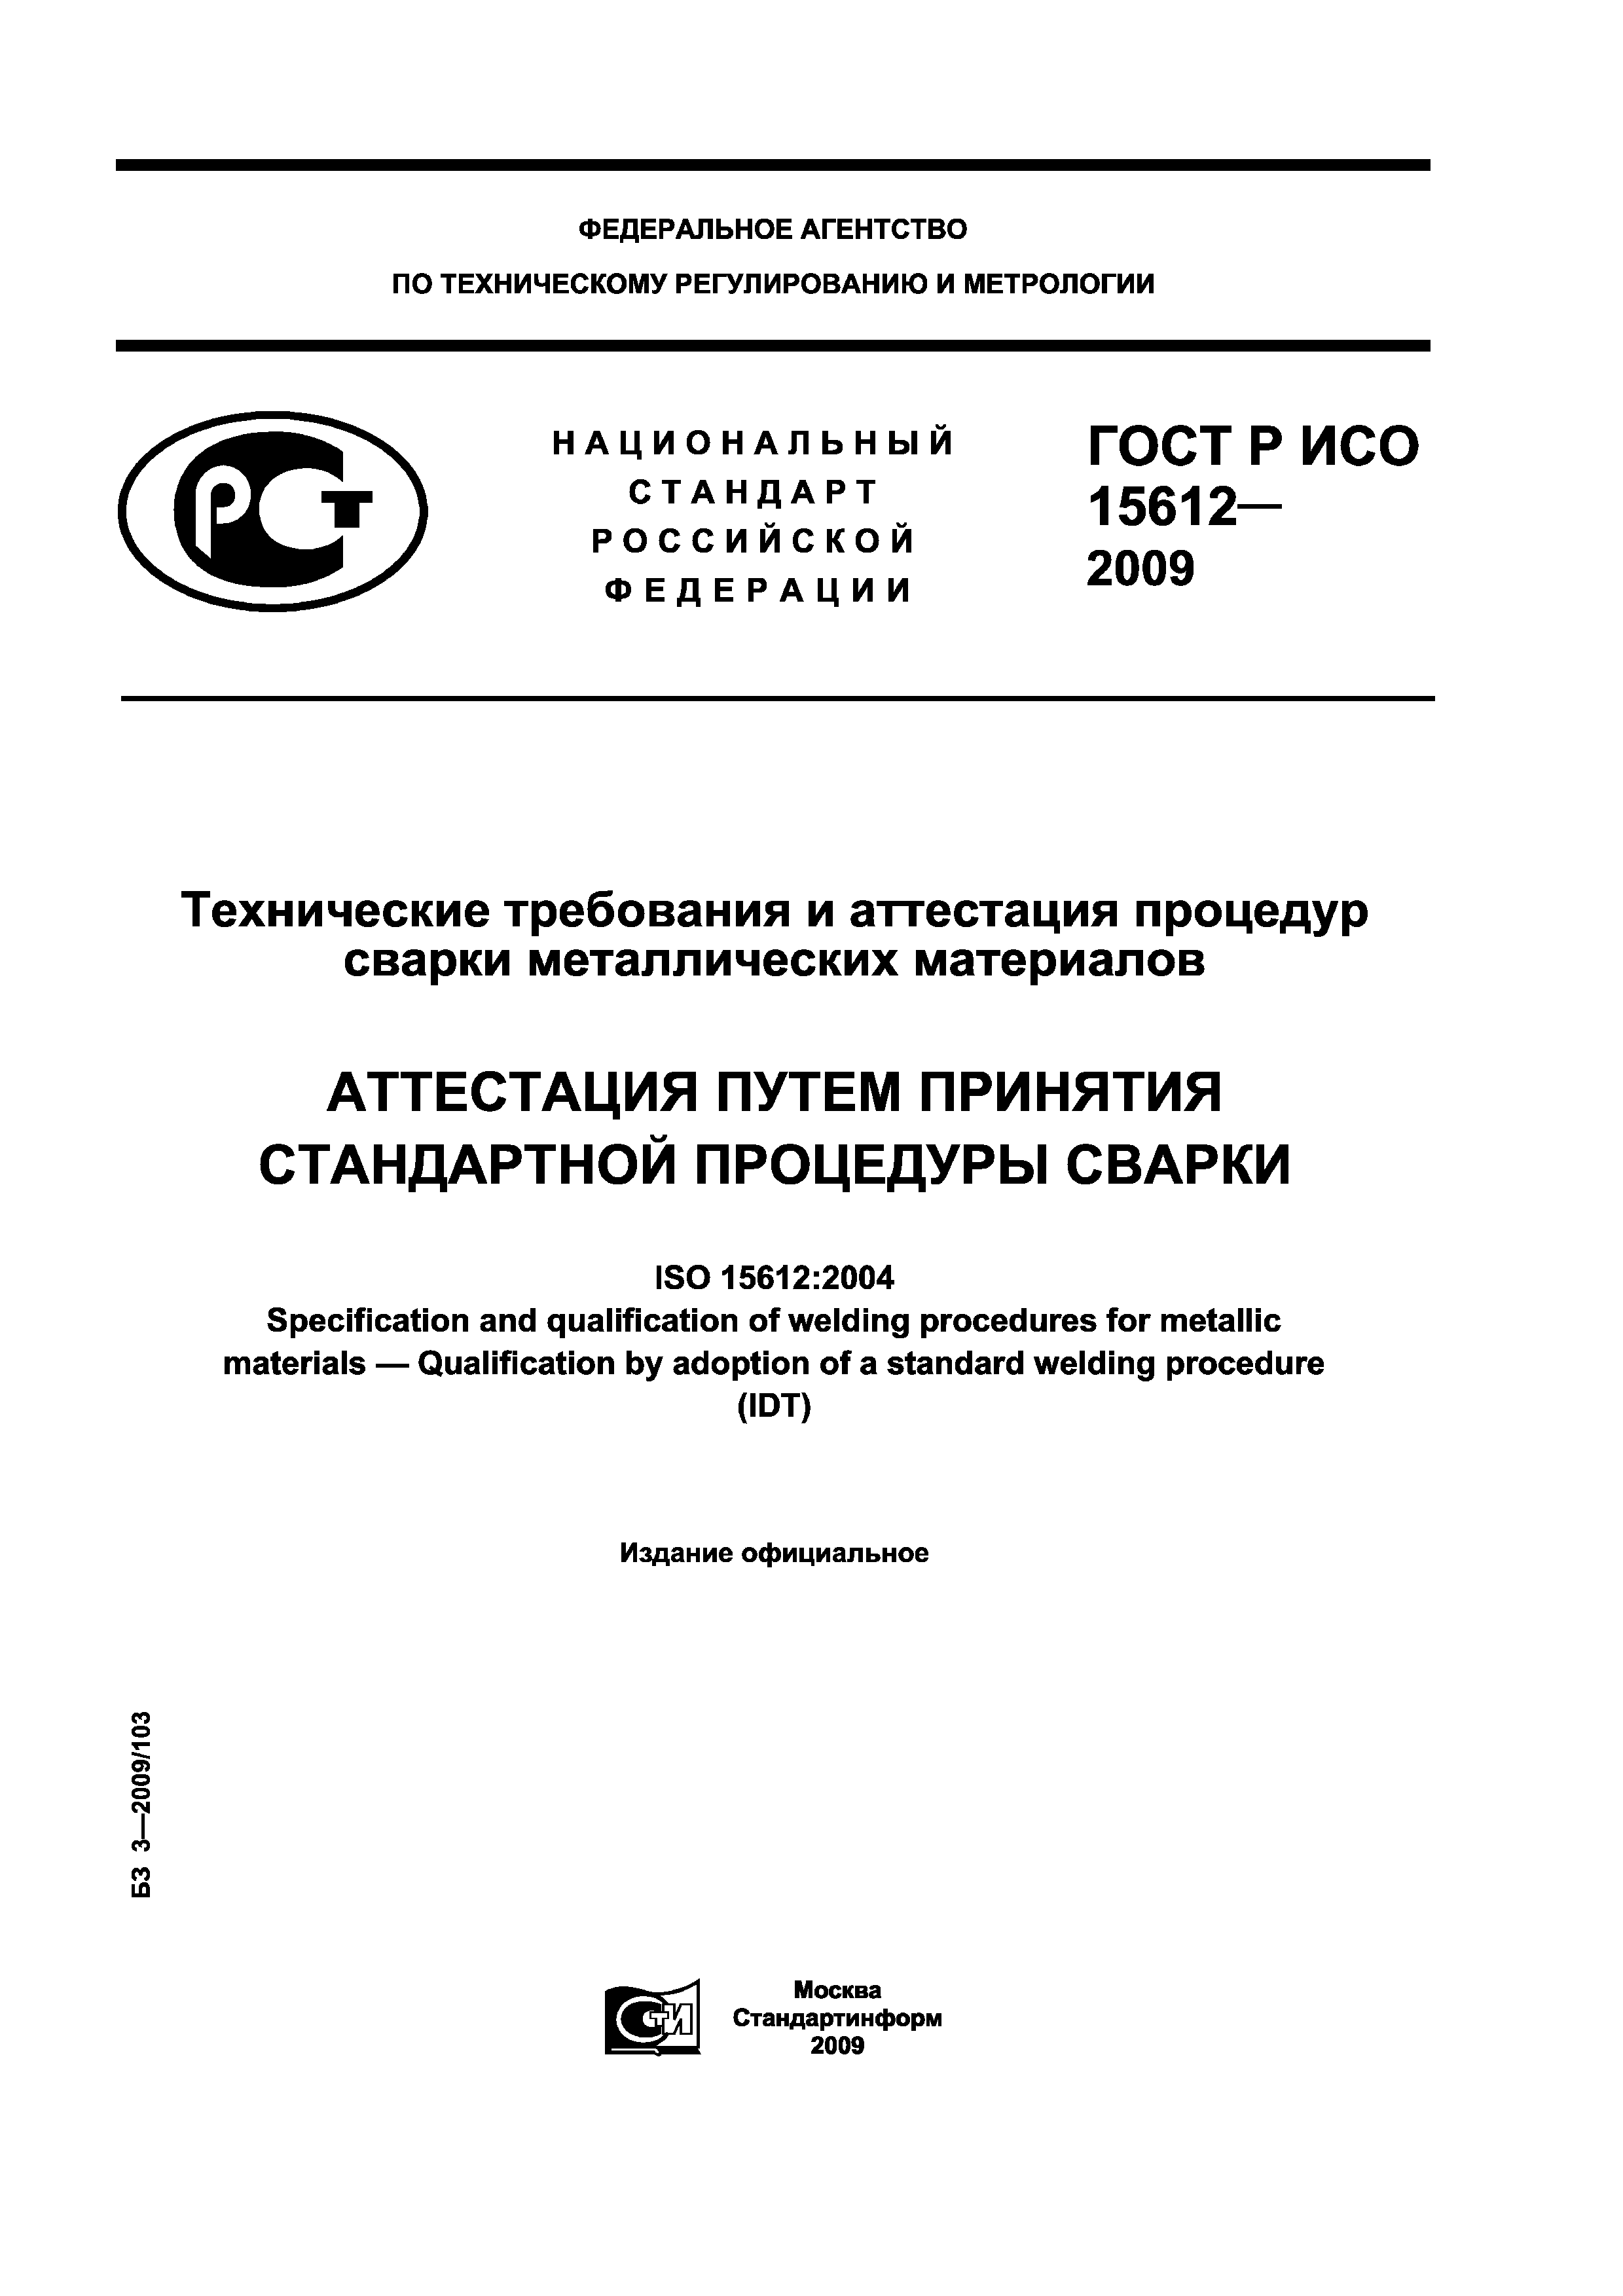 ГОСТ Р ИСО 15612-2009